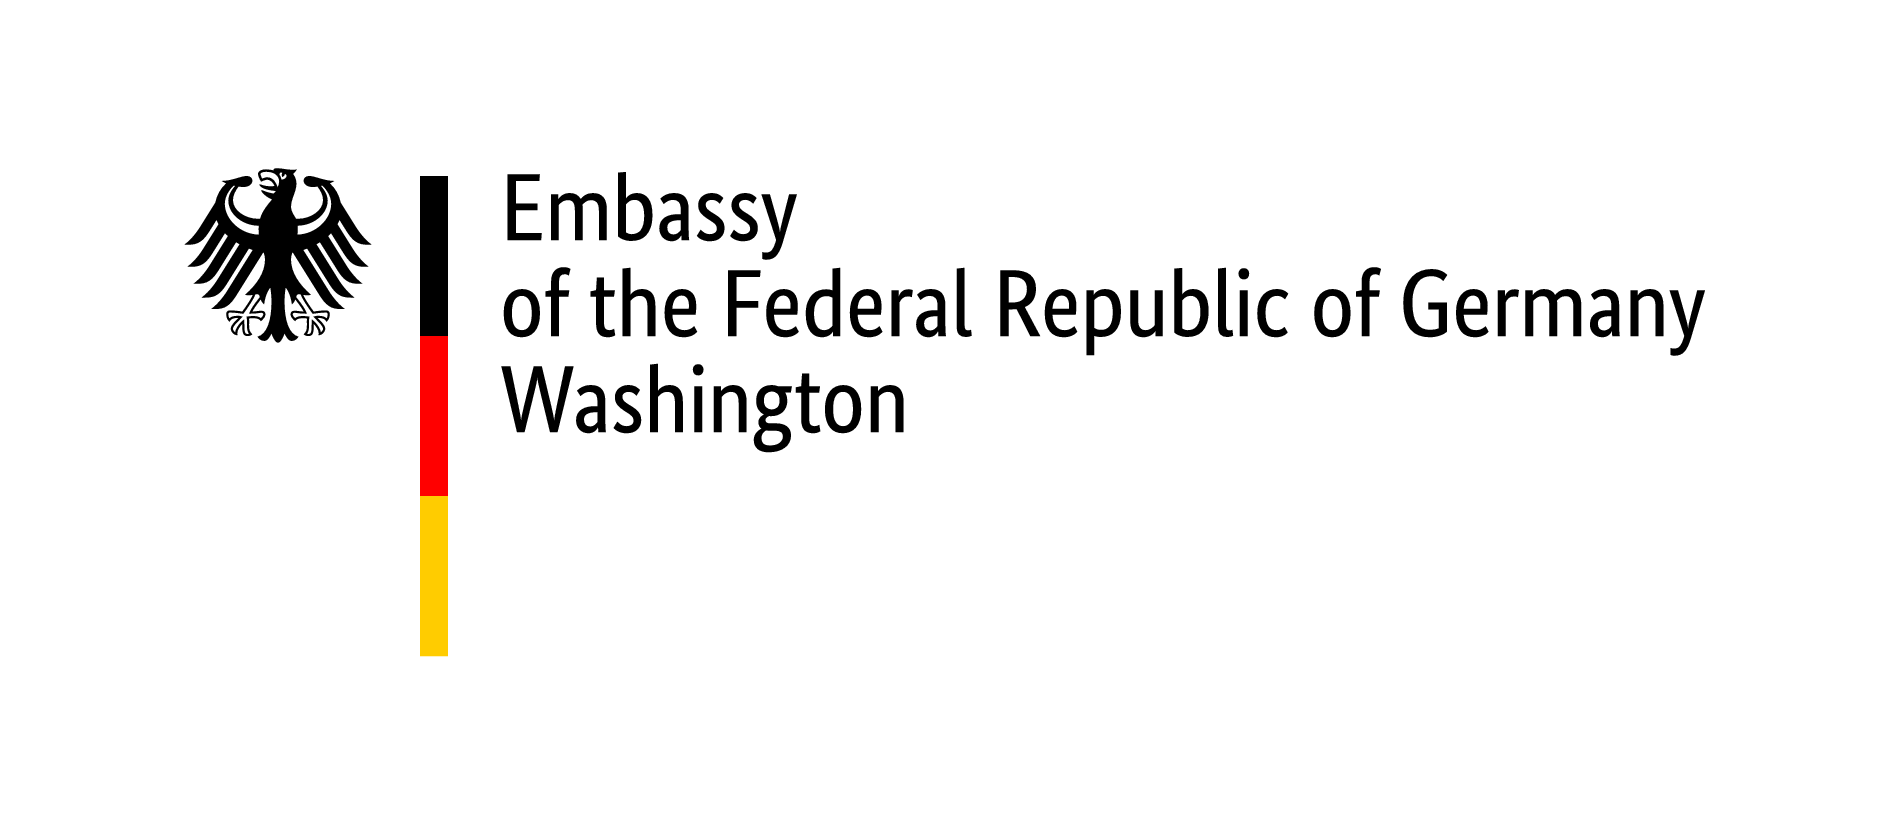 German Embassy in Washington, D.C. logo